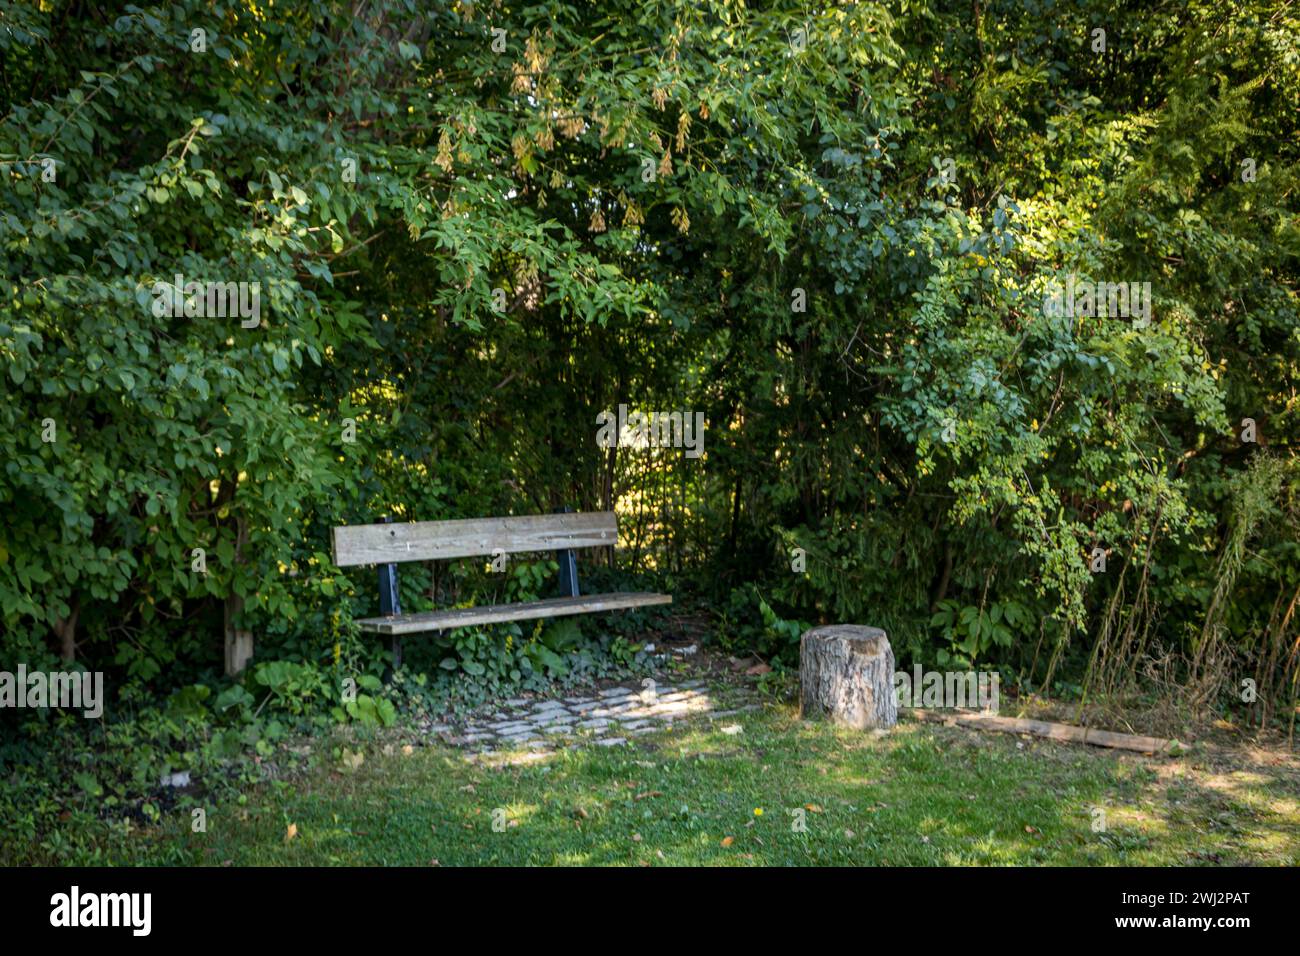 un parc banc vide solitaire dans un endroit calme pour s'asseoir dans le jardin parmi les arbres Banque D'Images